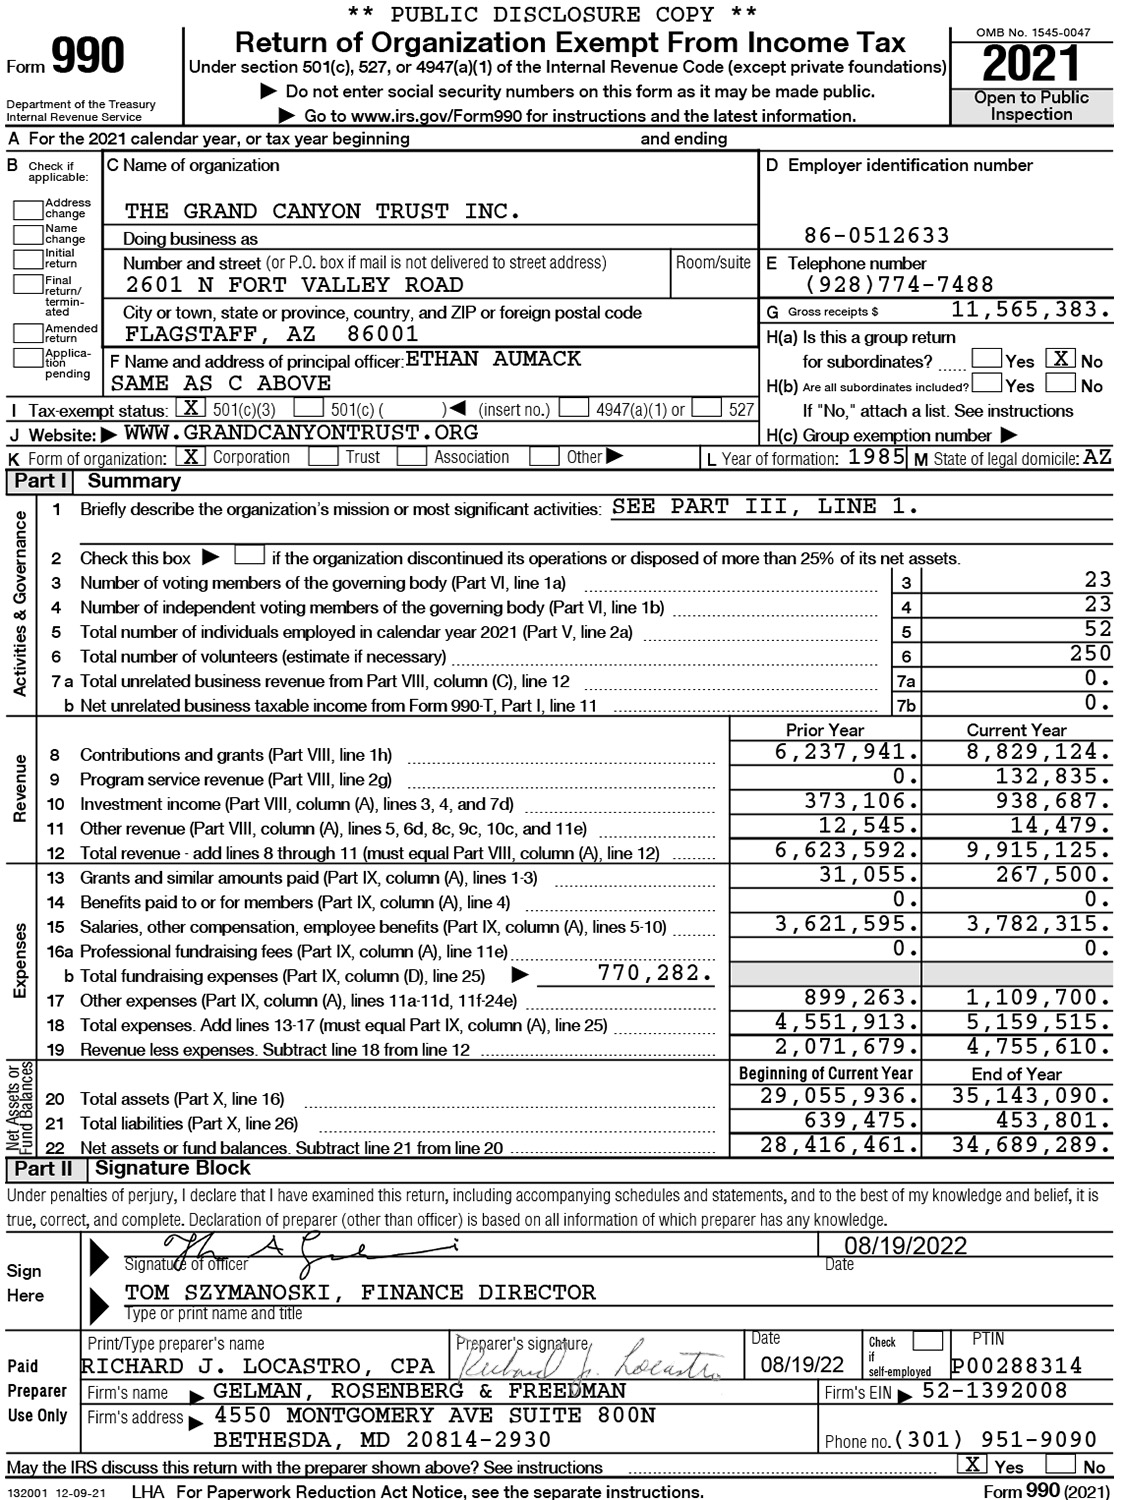 Tax Form 990